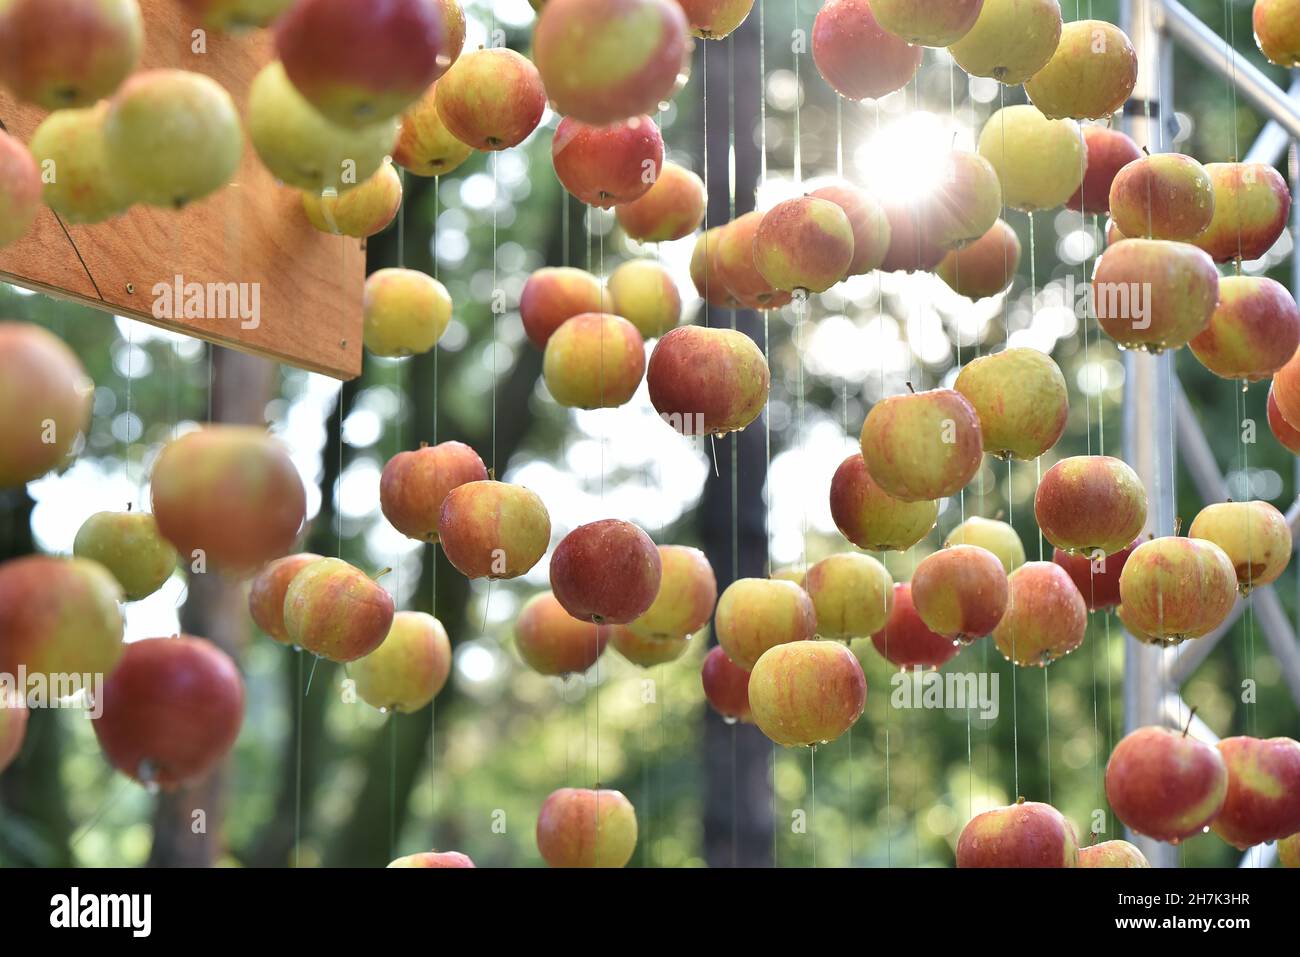 Dekoration bestehend aus reifen Äpfeln, die am Seil hängen, arrangiert für die Open-Air-Veranstaltung Stockfoto